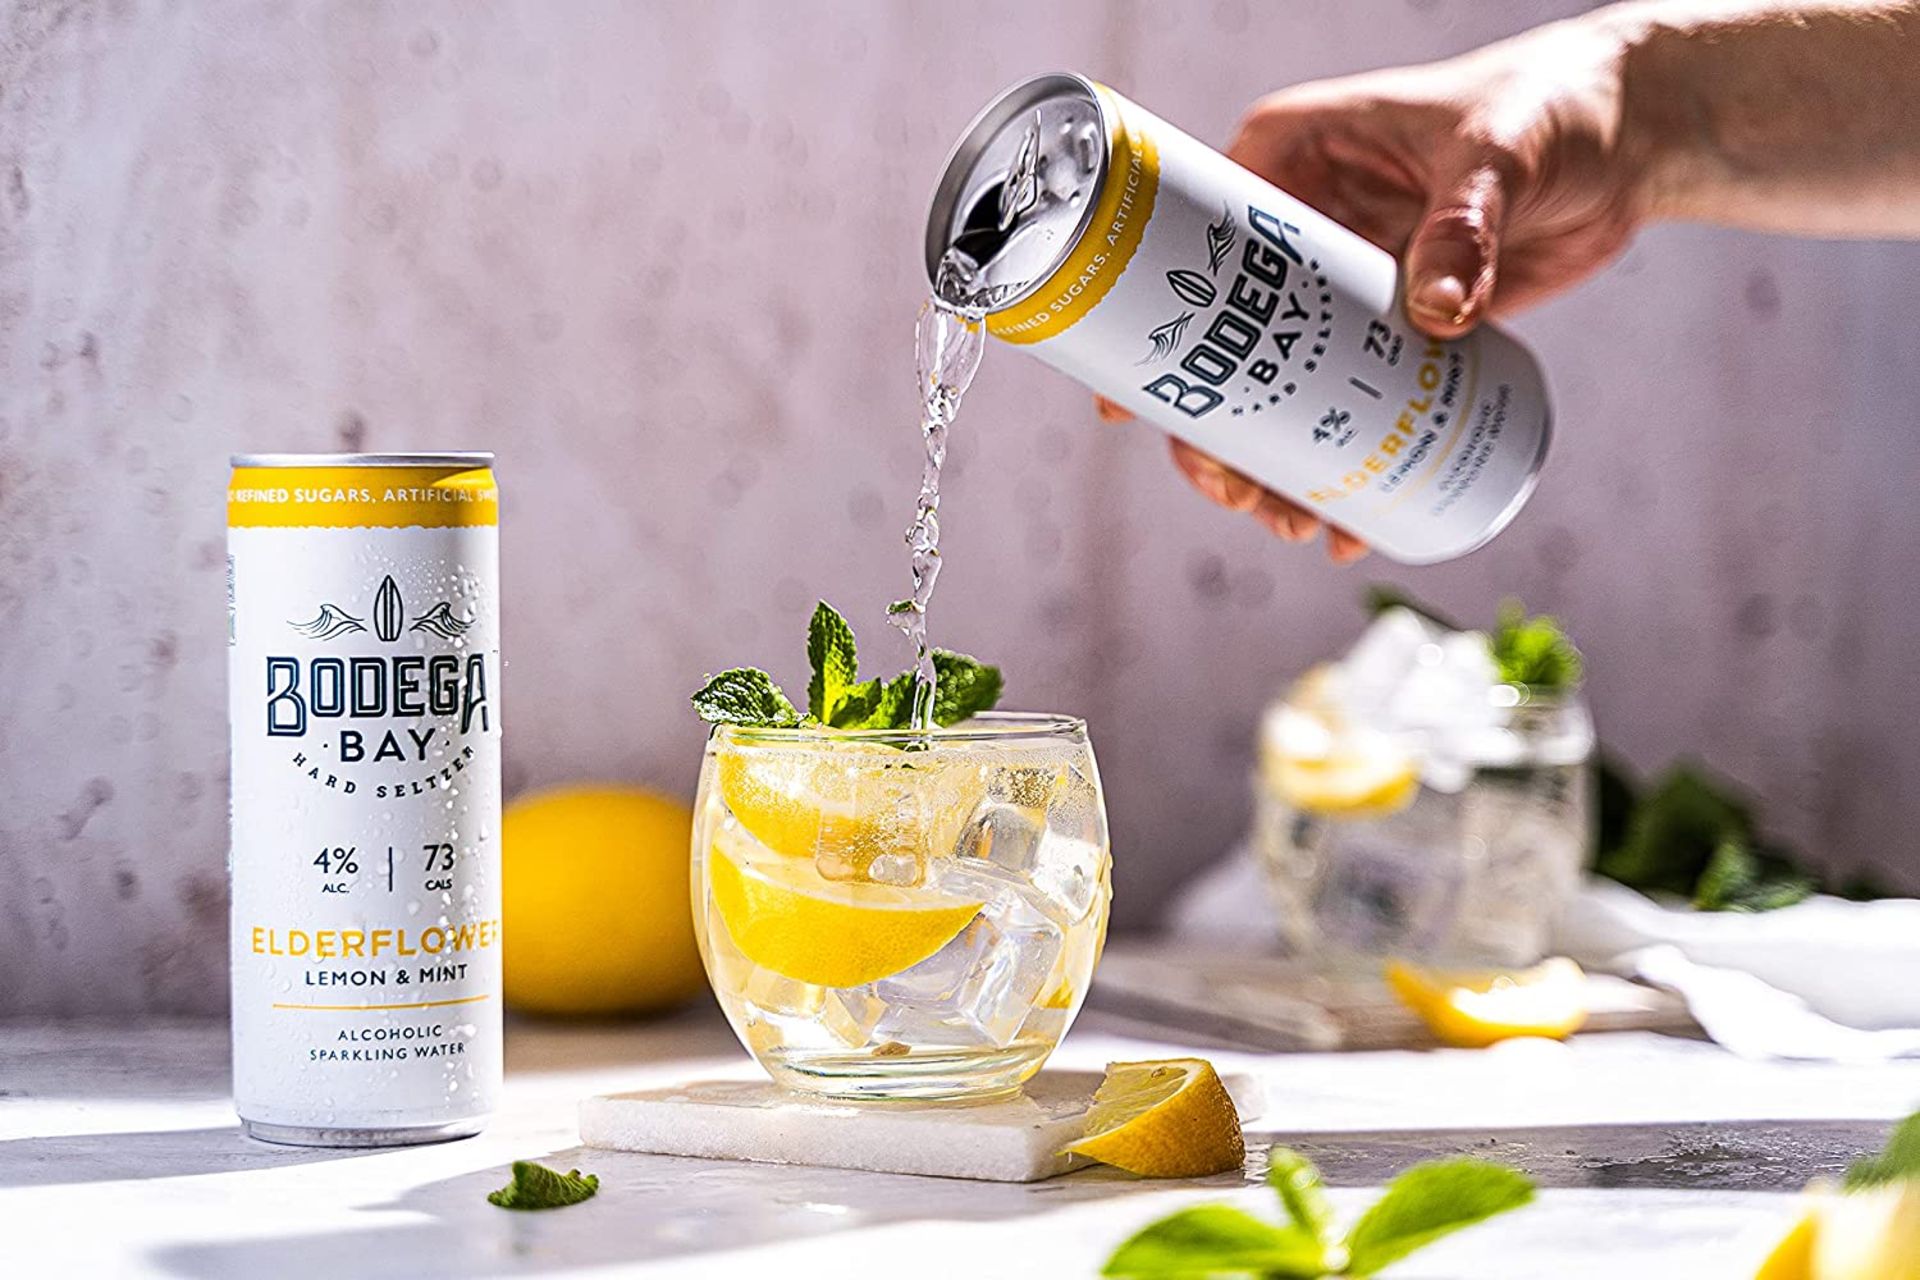 24 x Bodega Bay Hard Seltzer 250ml Alcoholic Sparkling Water Drinks - Elderflower Lemon & Mint - - Image 3 of 9